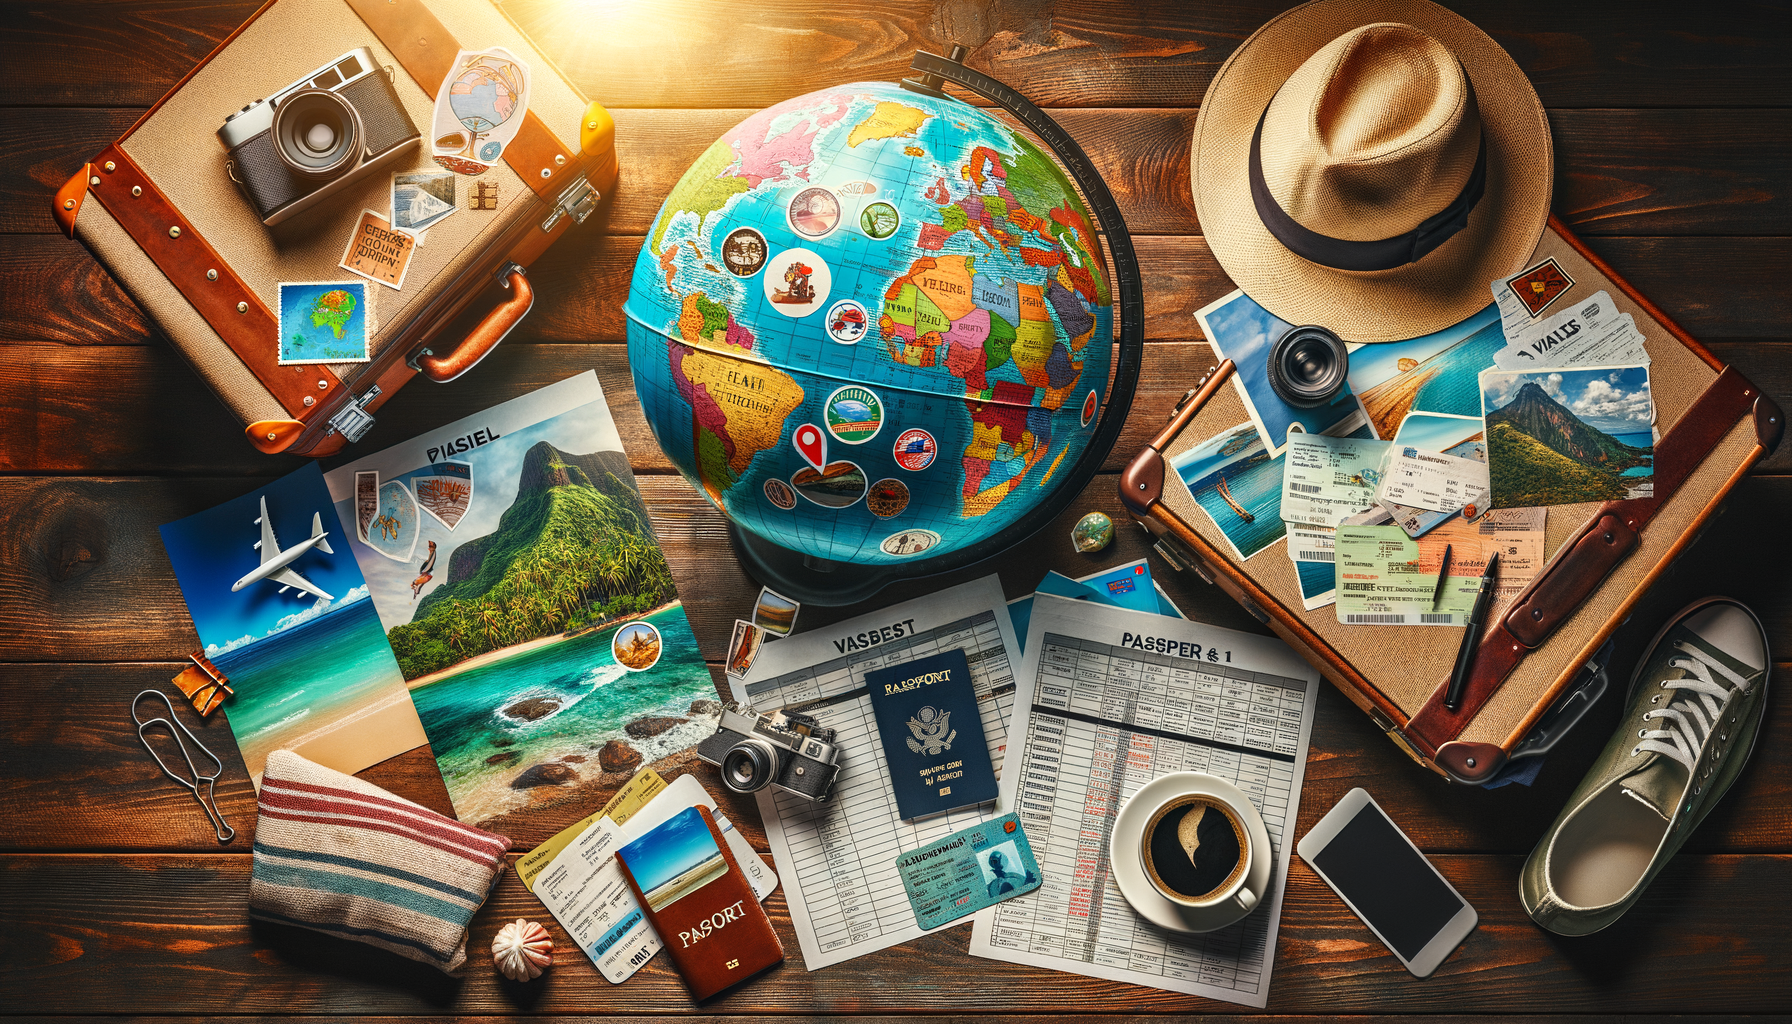 découvrez comment préparer un tour du monde en 5 étapes simples et rapides pour une aventure inoubliable. trouvez toutes les informations dont vous avez besoin pour réaliser votre rêve de voyage autour du globe.